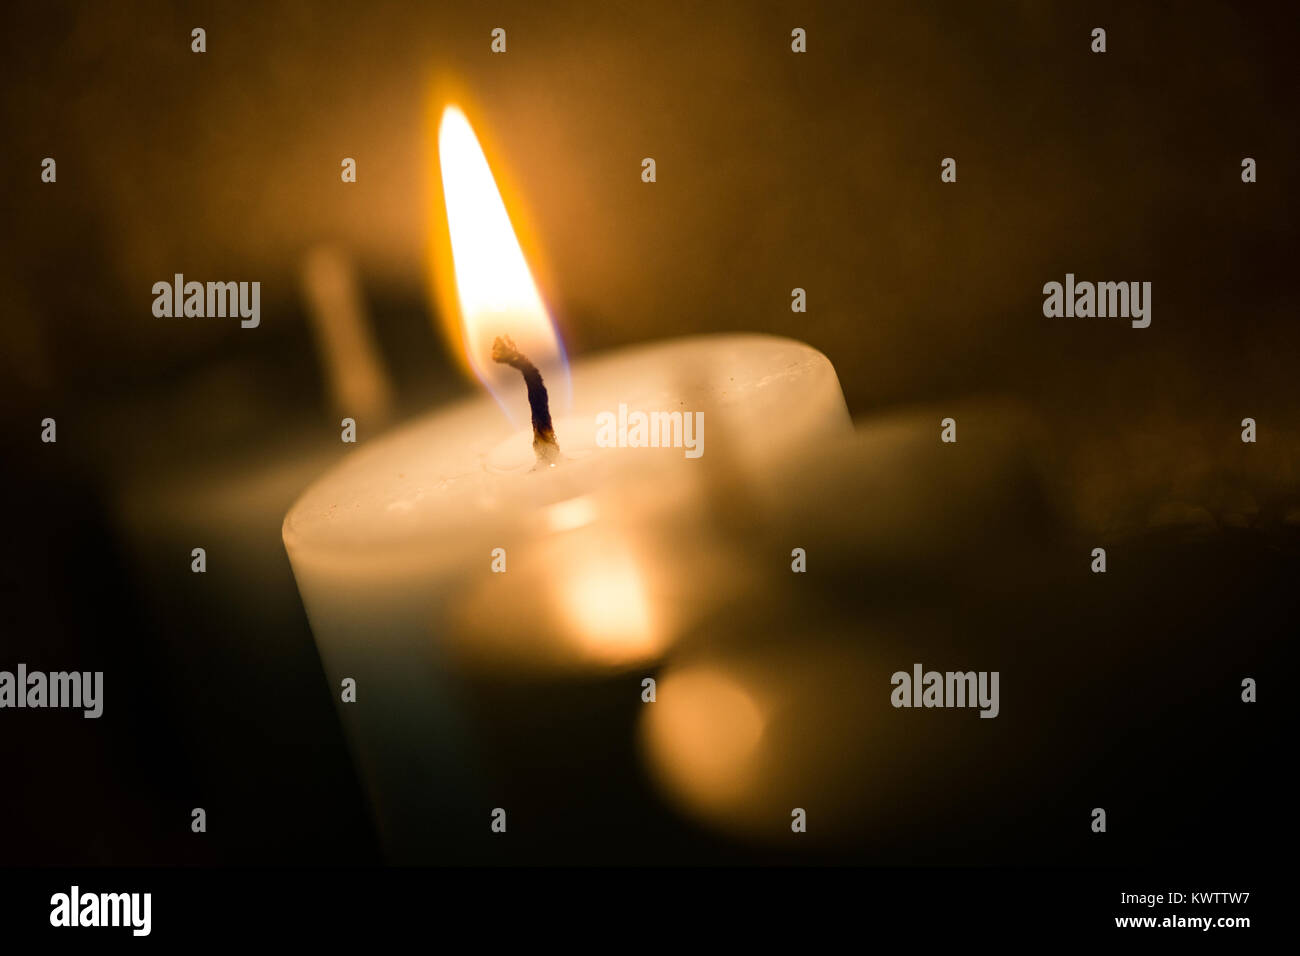 Burning candle with orange tint Stock Photo